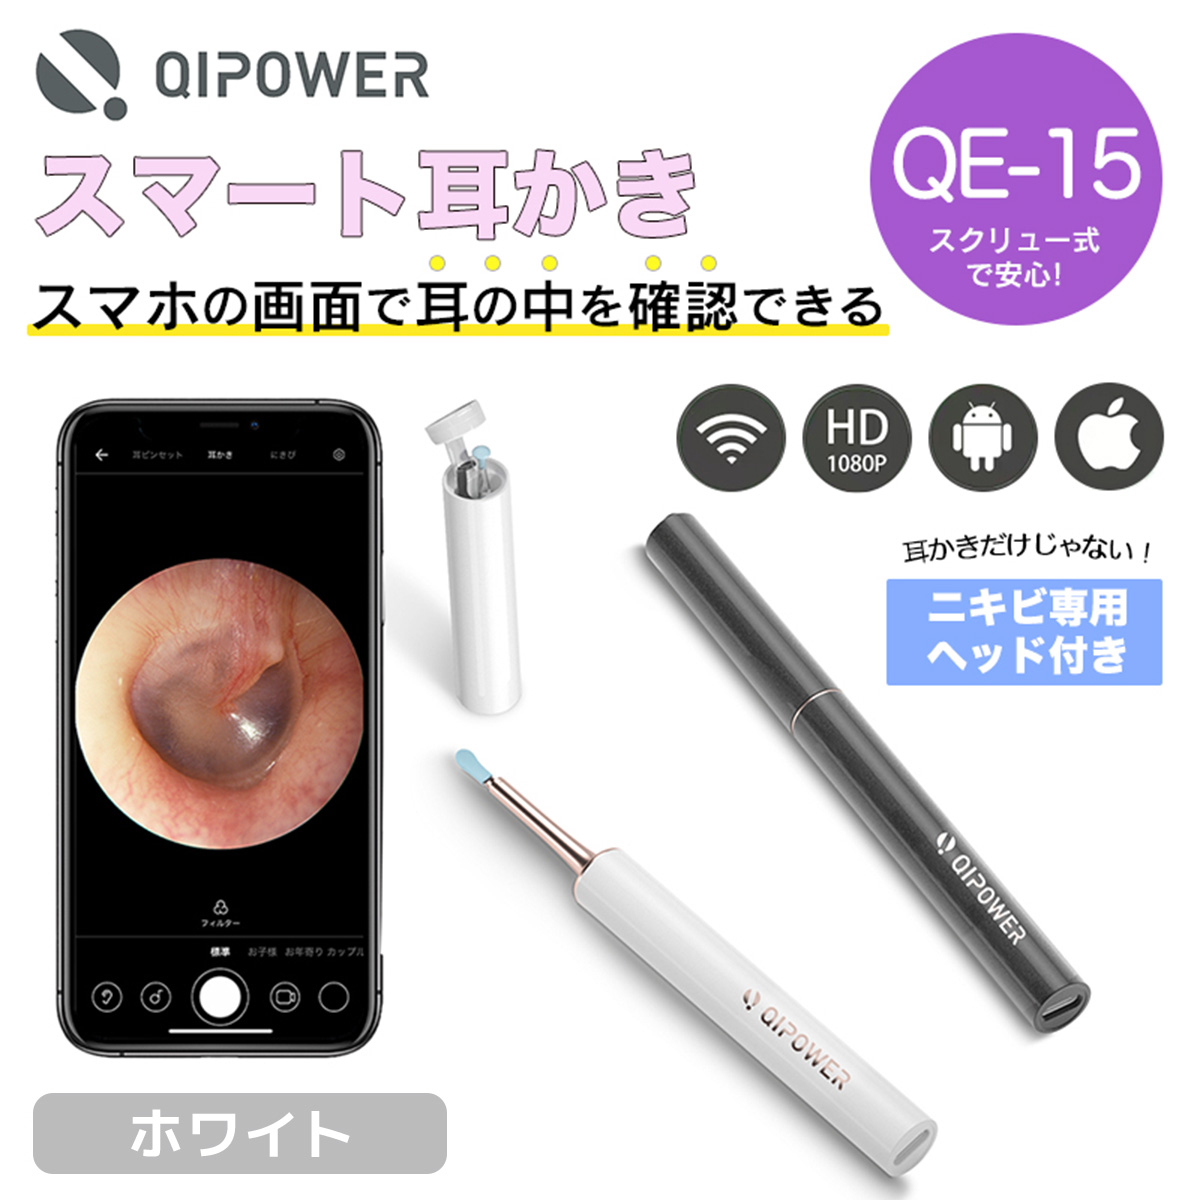 ひかりＴＶショッピング 【在庫品/即納】QiPower スマート耳かき QE-15 ホワイト XV55000120｜MAXEVIS